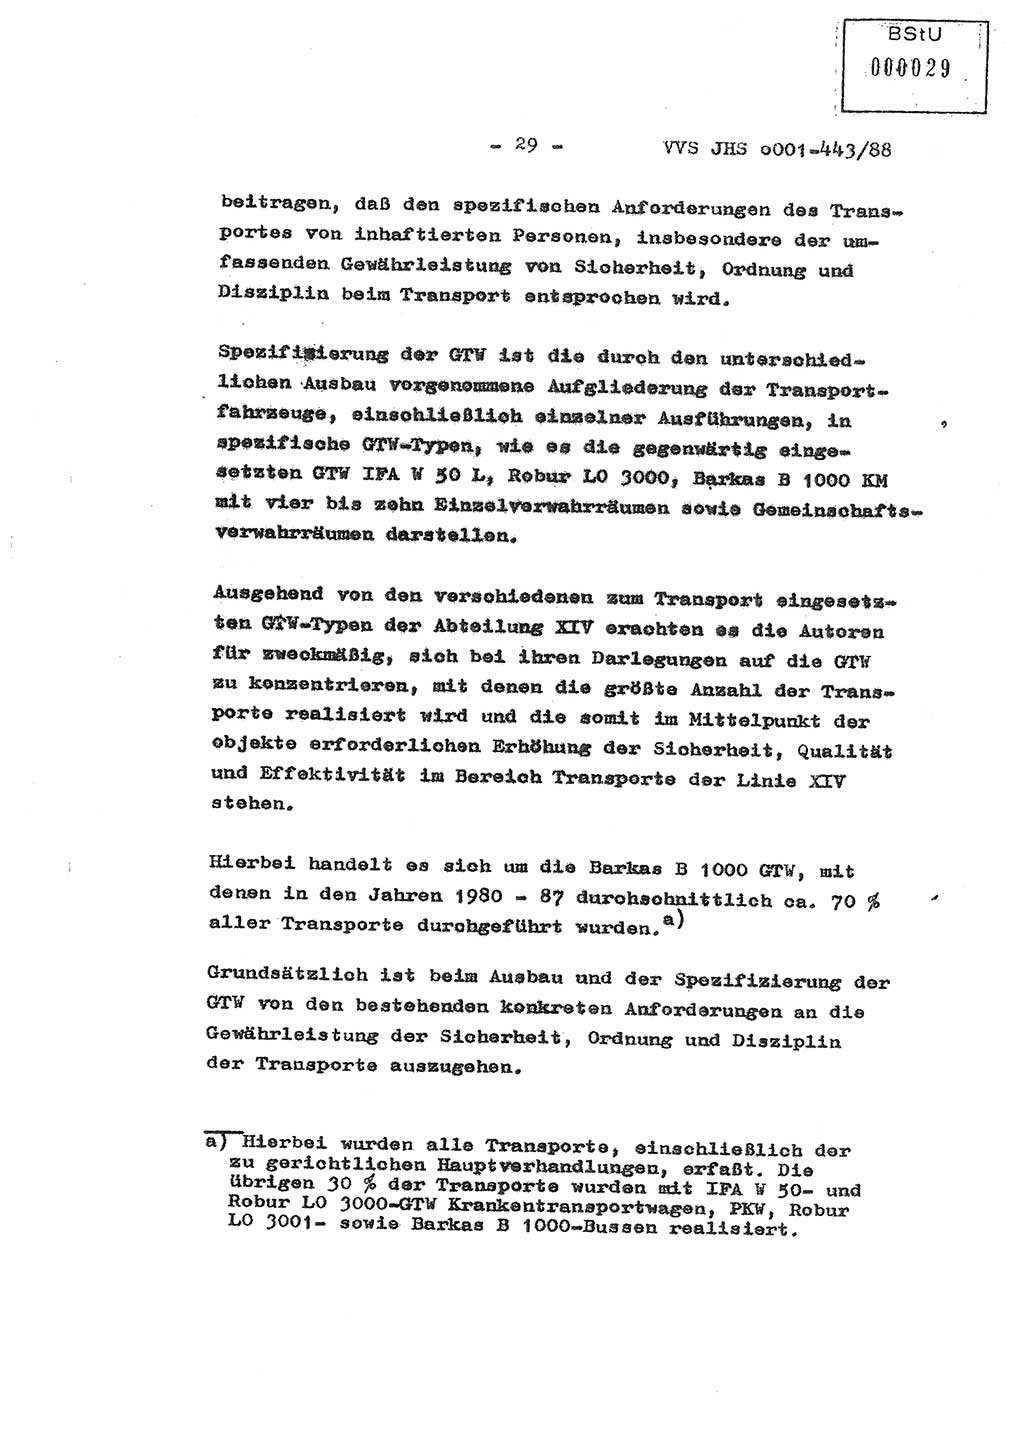 Diplomarbeit Hauptmann Michael Rast (Abt. ⅩⅣ), Major Bernd Rahaus (Abt. ⅩⅣ), Ministerium für Staatssicherheit (MfS) [Deutsche Demokratische Republik (DDR)], Juristische Hochschule (JHS), Vertrauliche Verschlußsache (VVS) o001-443/88, Potsdam 1988, Seite 29 (Dipl.-Arb. MfS DDR JHS VVS o001-443/88 1988, S. 29)